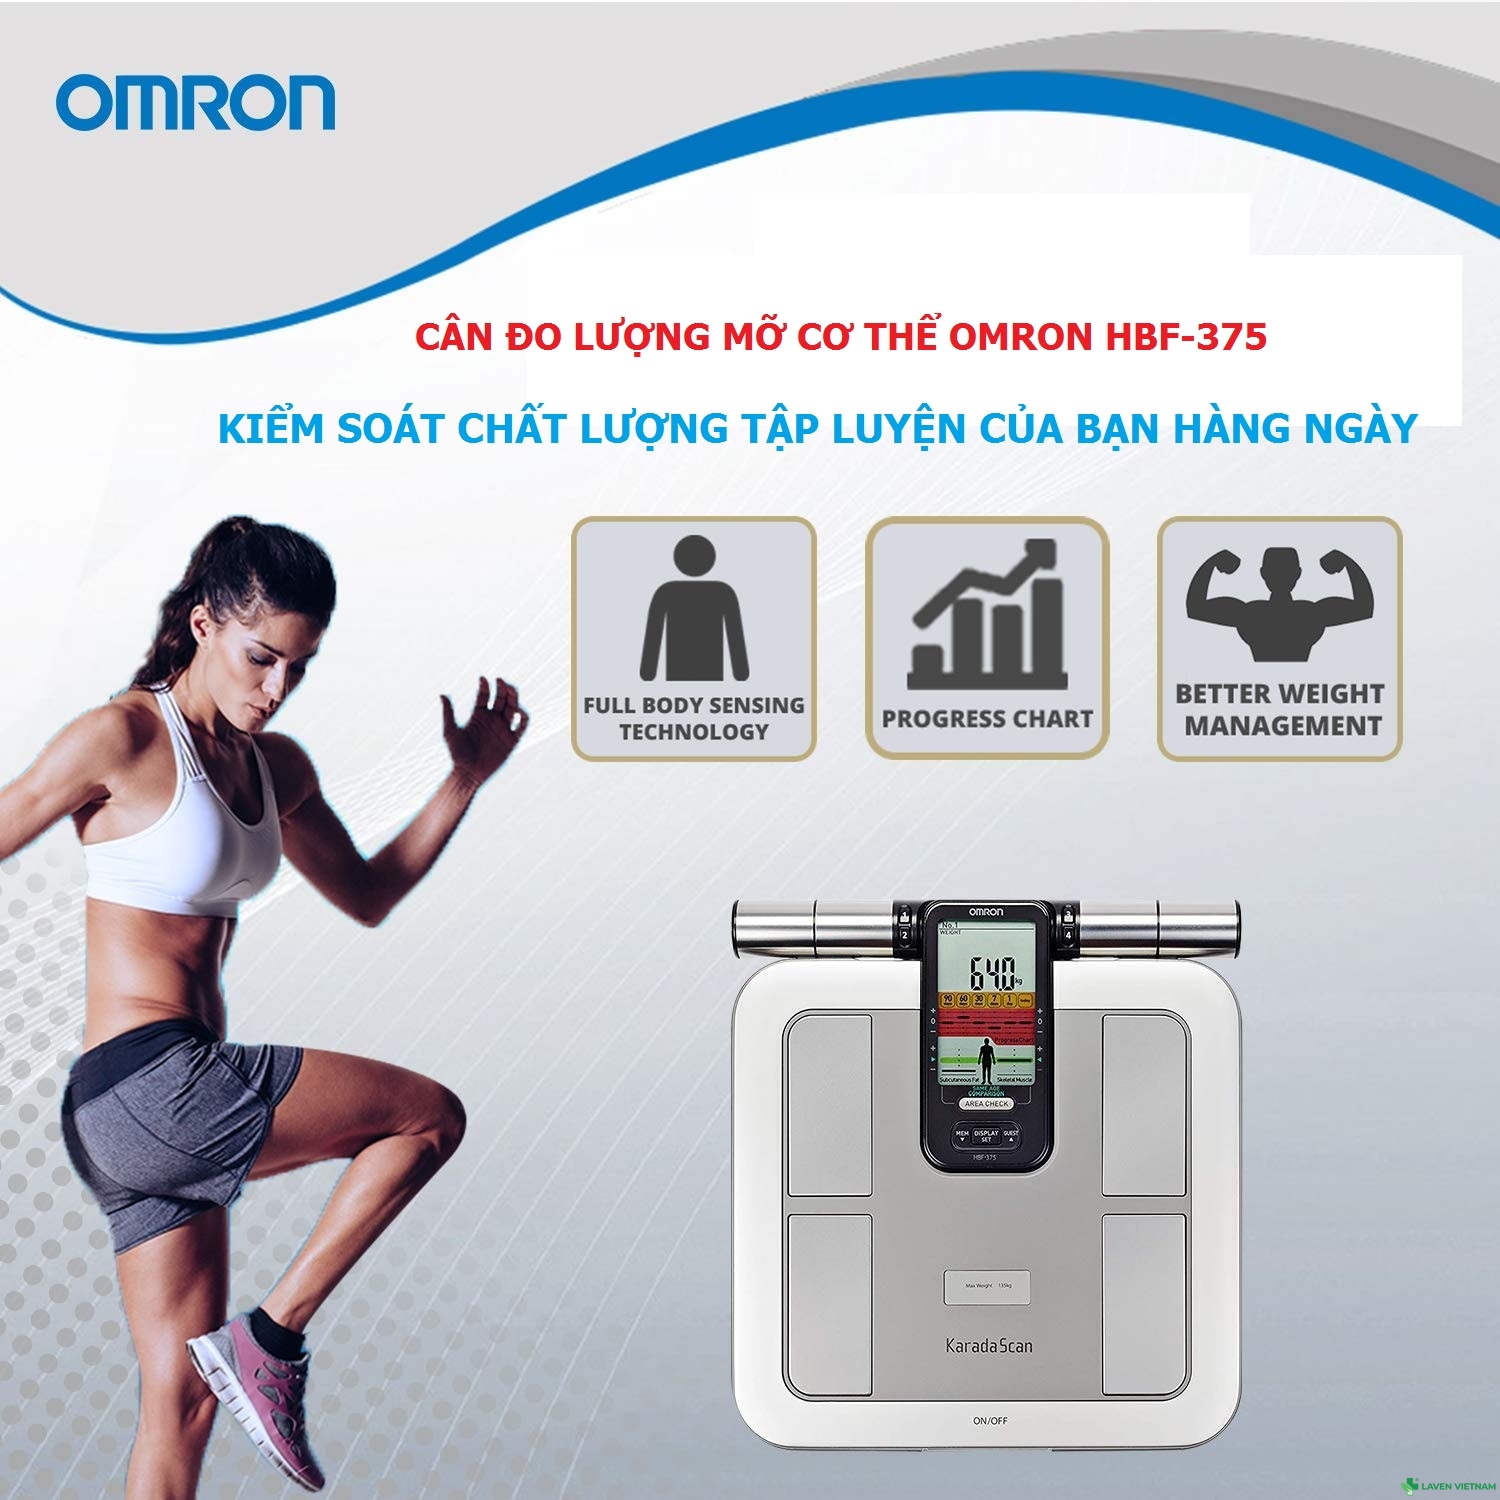 Máy đo lượng mỡ Omron giúp bạn kiểm soát chất lượng tập luyện với từng phần trên cơ thể